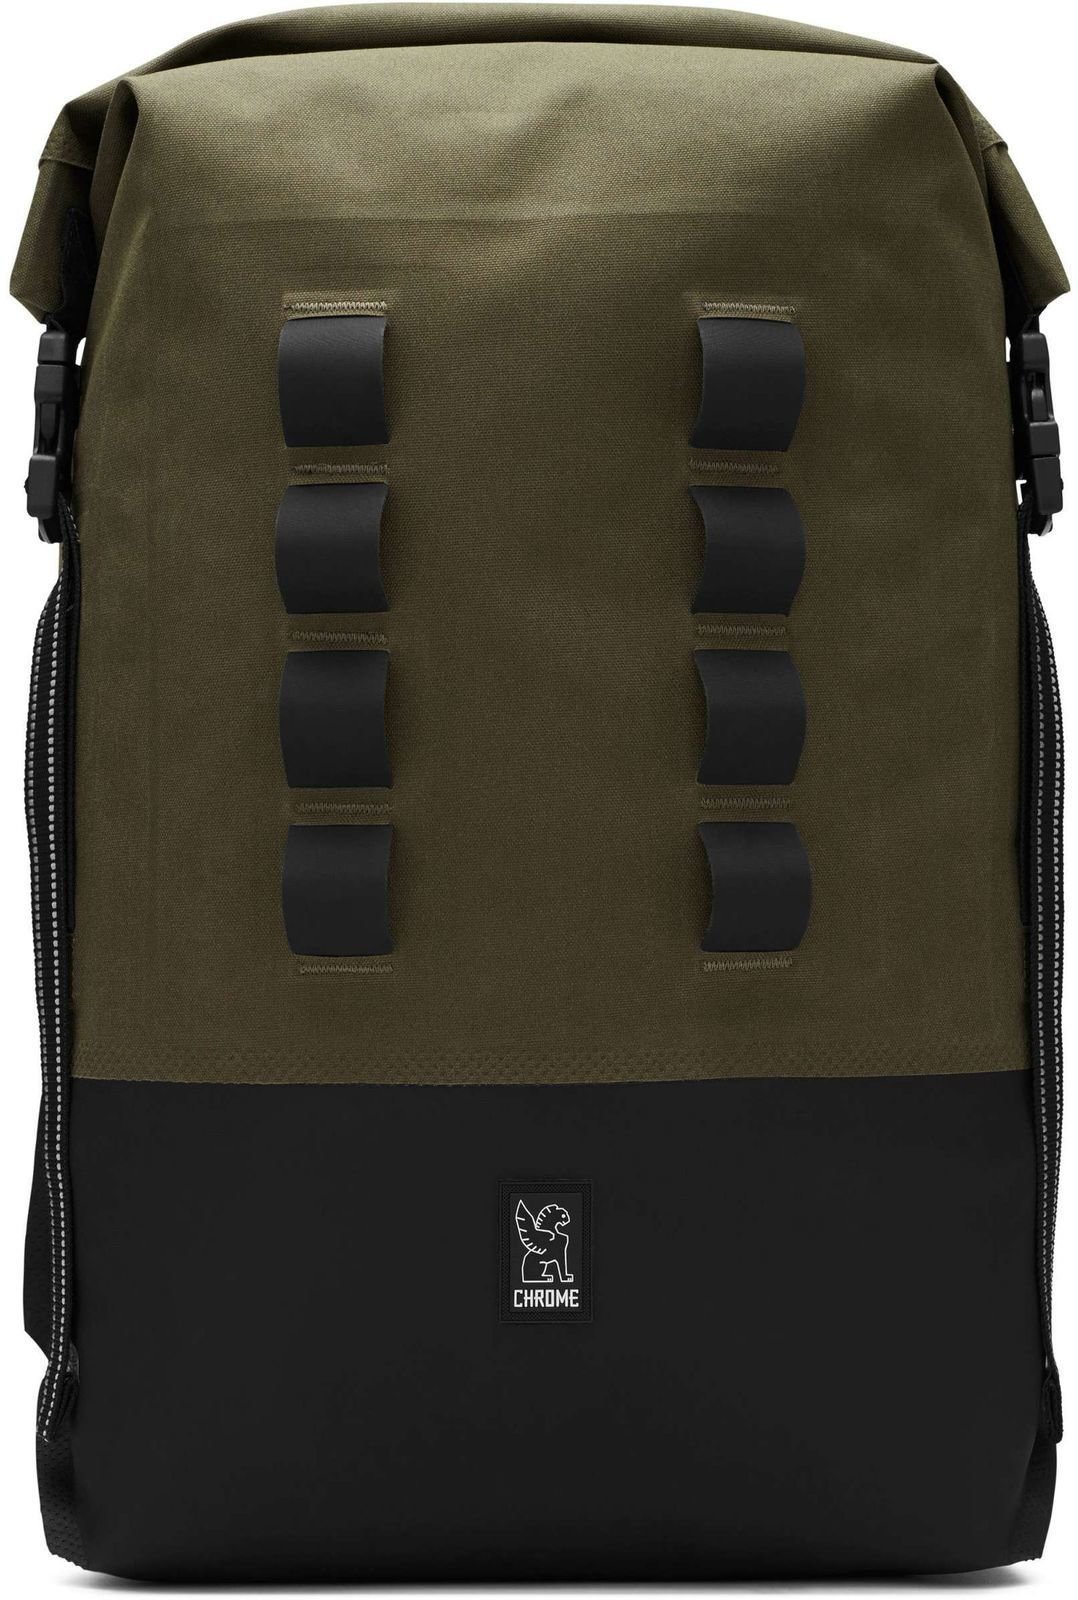 Lifestyle Backpack / Bag Chrome Urban Ex Rolltop Ranger/Black 28 L Backpack